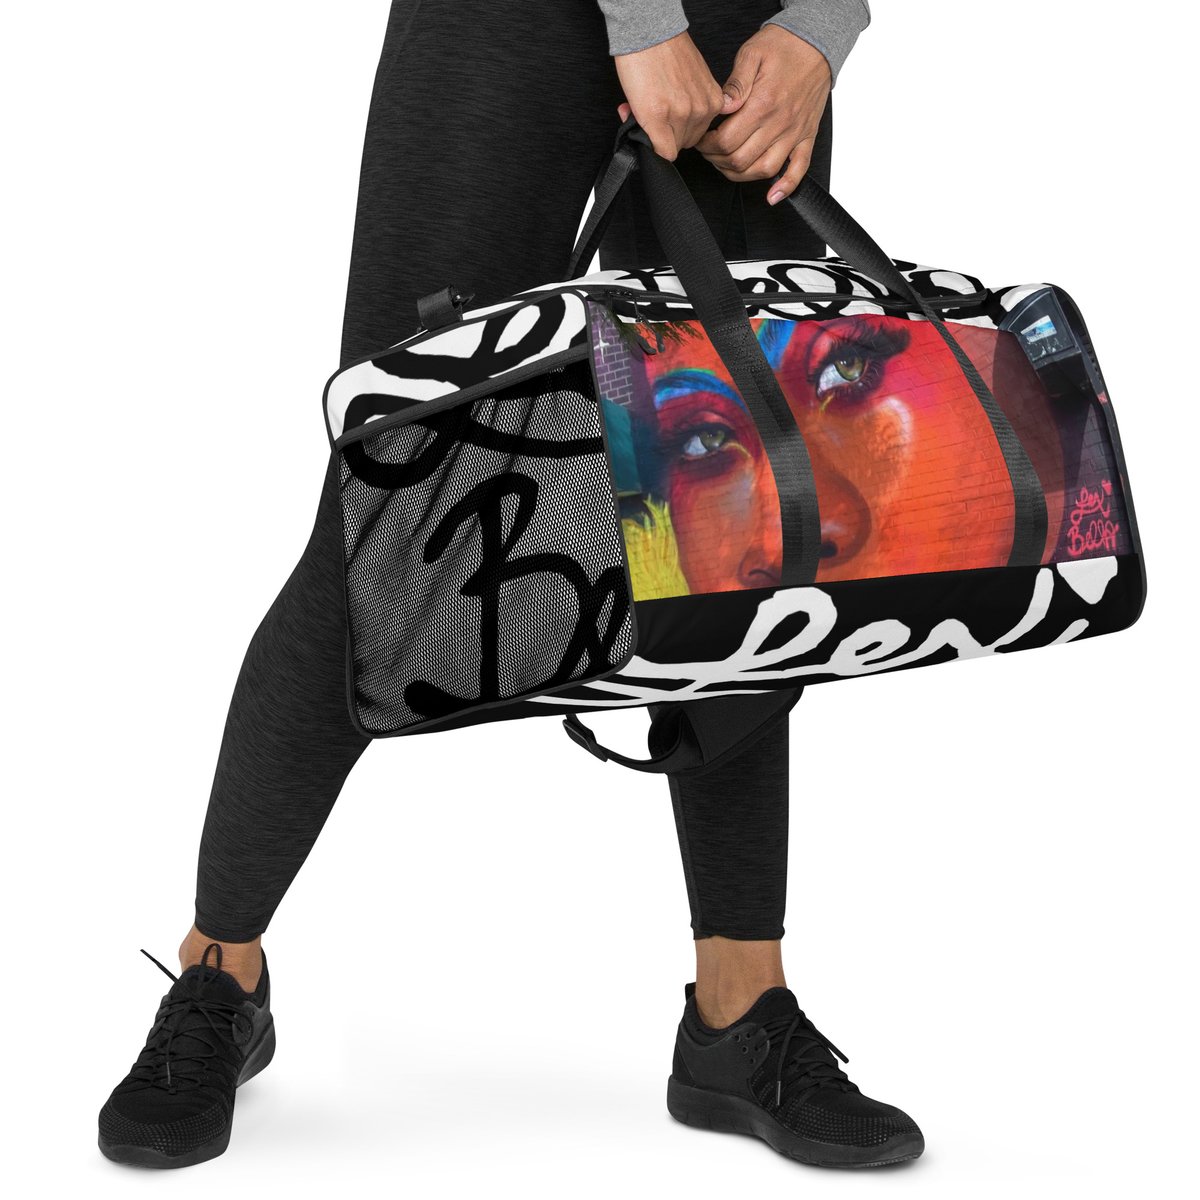 Image of The Ultimate Lexi Bella Duffle bag